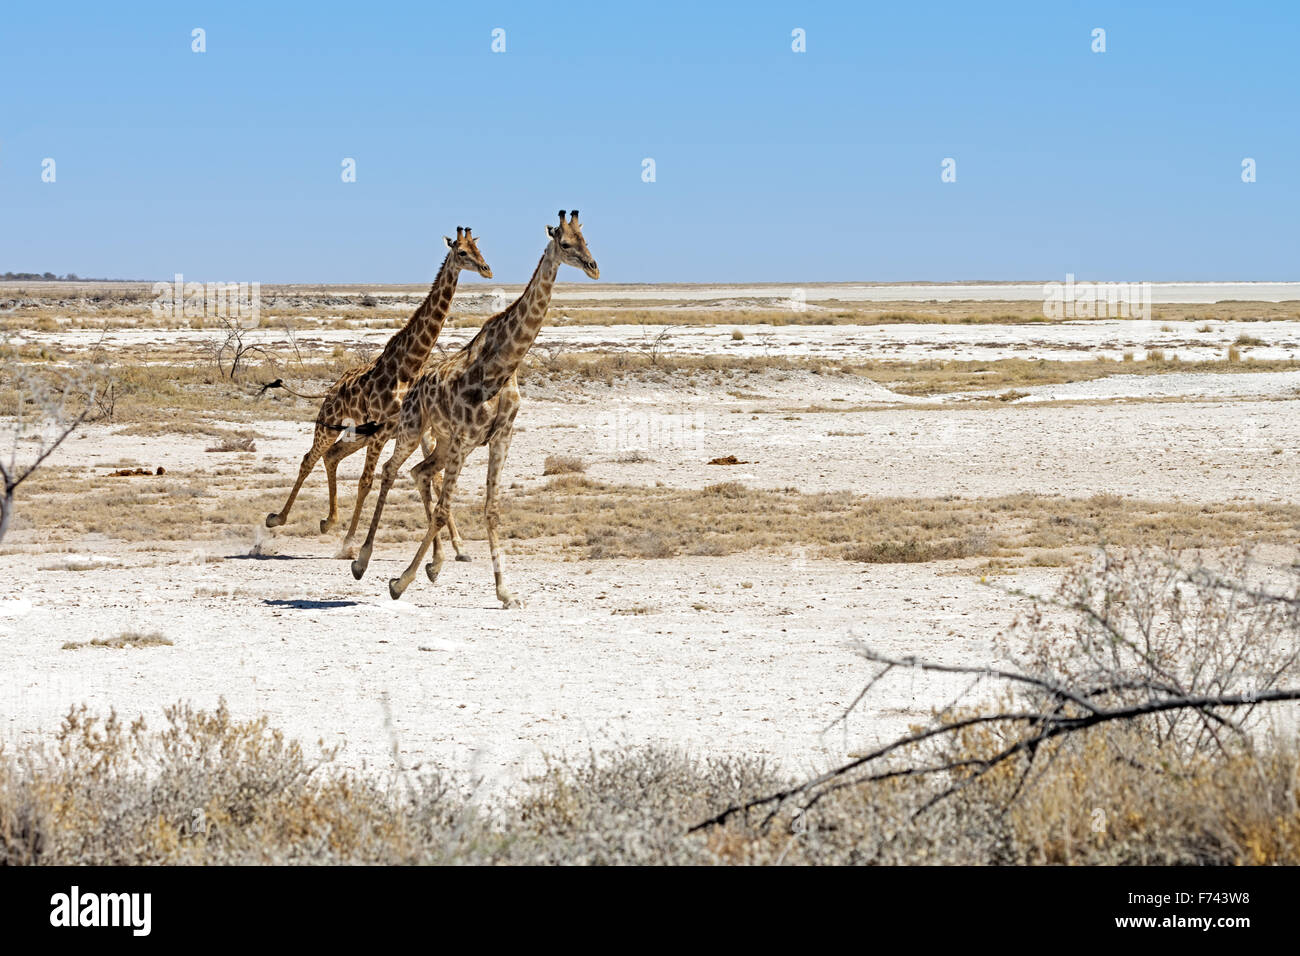 Deux girafes namibienne (Giraffa camelopardalis angolensis) s'exécutant dans le parc national d'Etosha, Namibie Banque D'Images